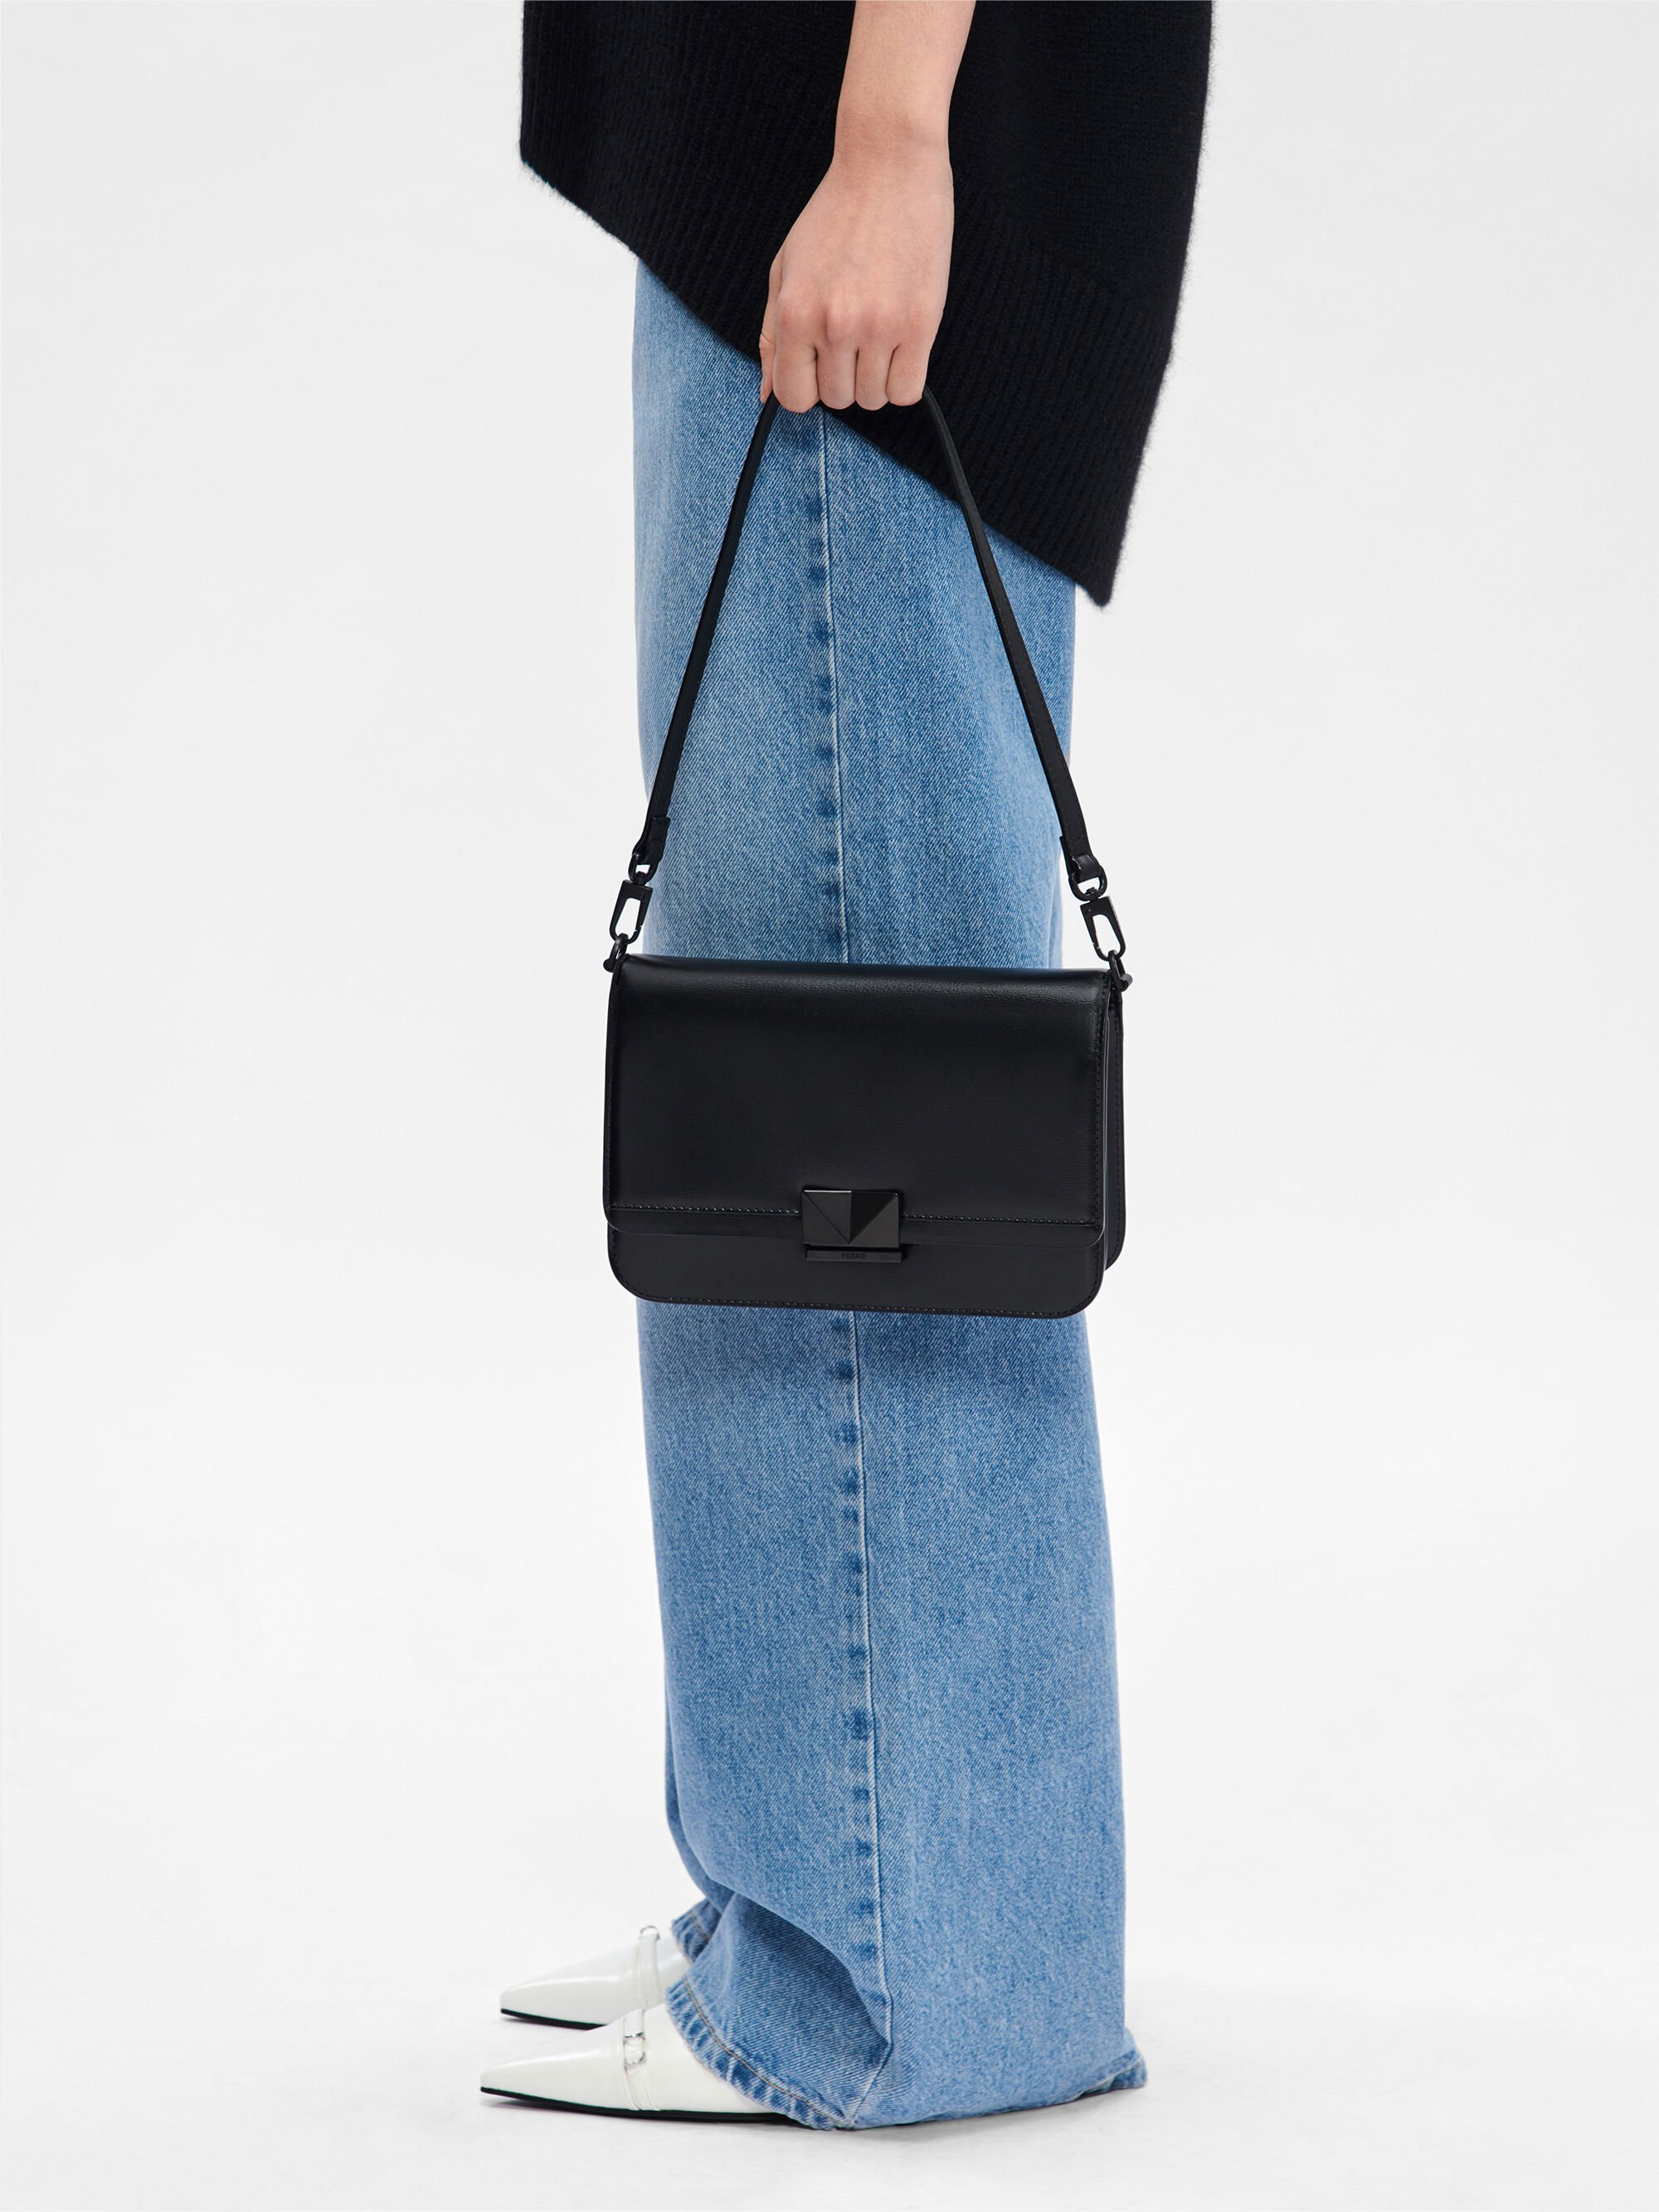 PEDRO Studio Kate Leather Shoulder Bag - Black